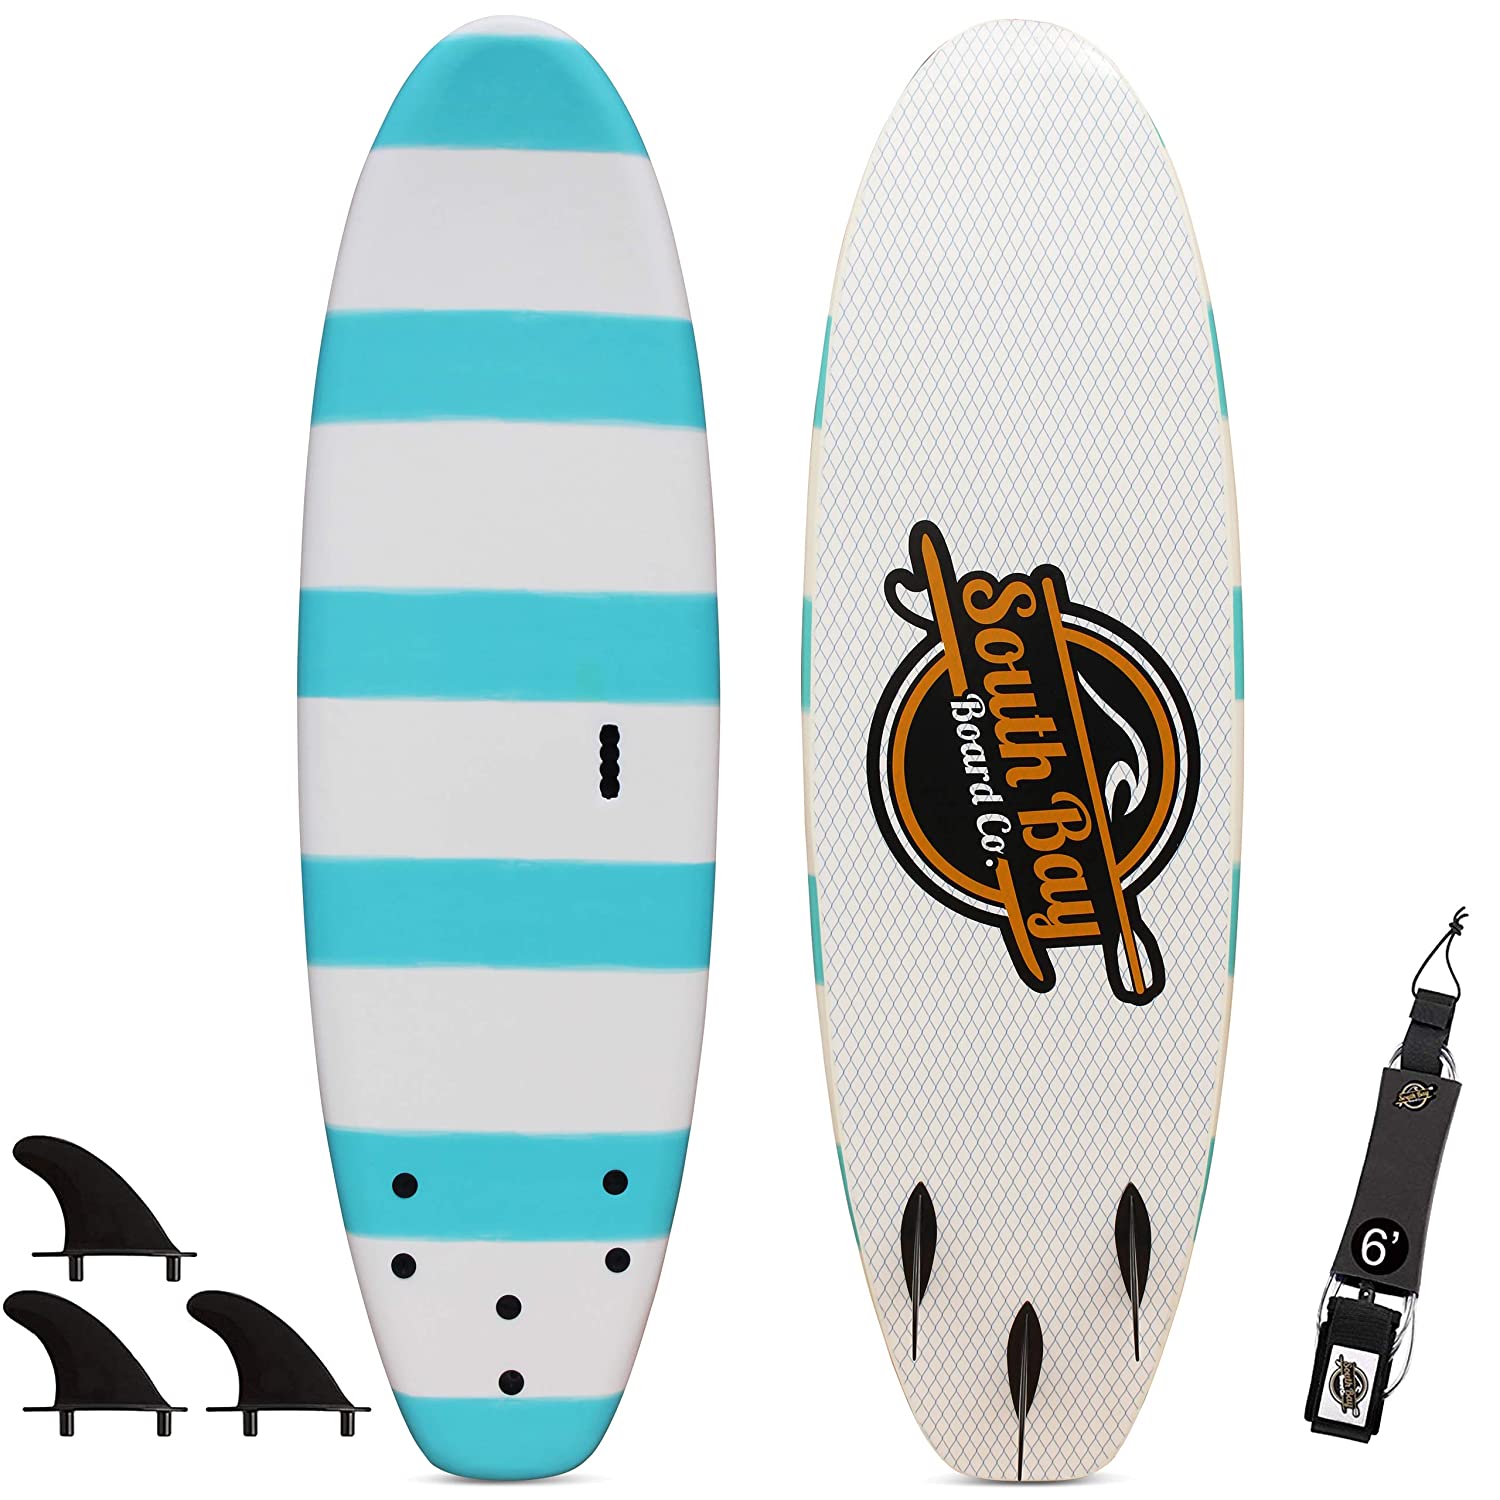 6’ Beginner Foam Surfboard - Soft Top Surfboard for Kids - The 6’ Guppy by South Bay Board Co.